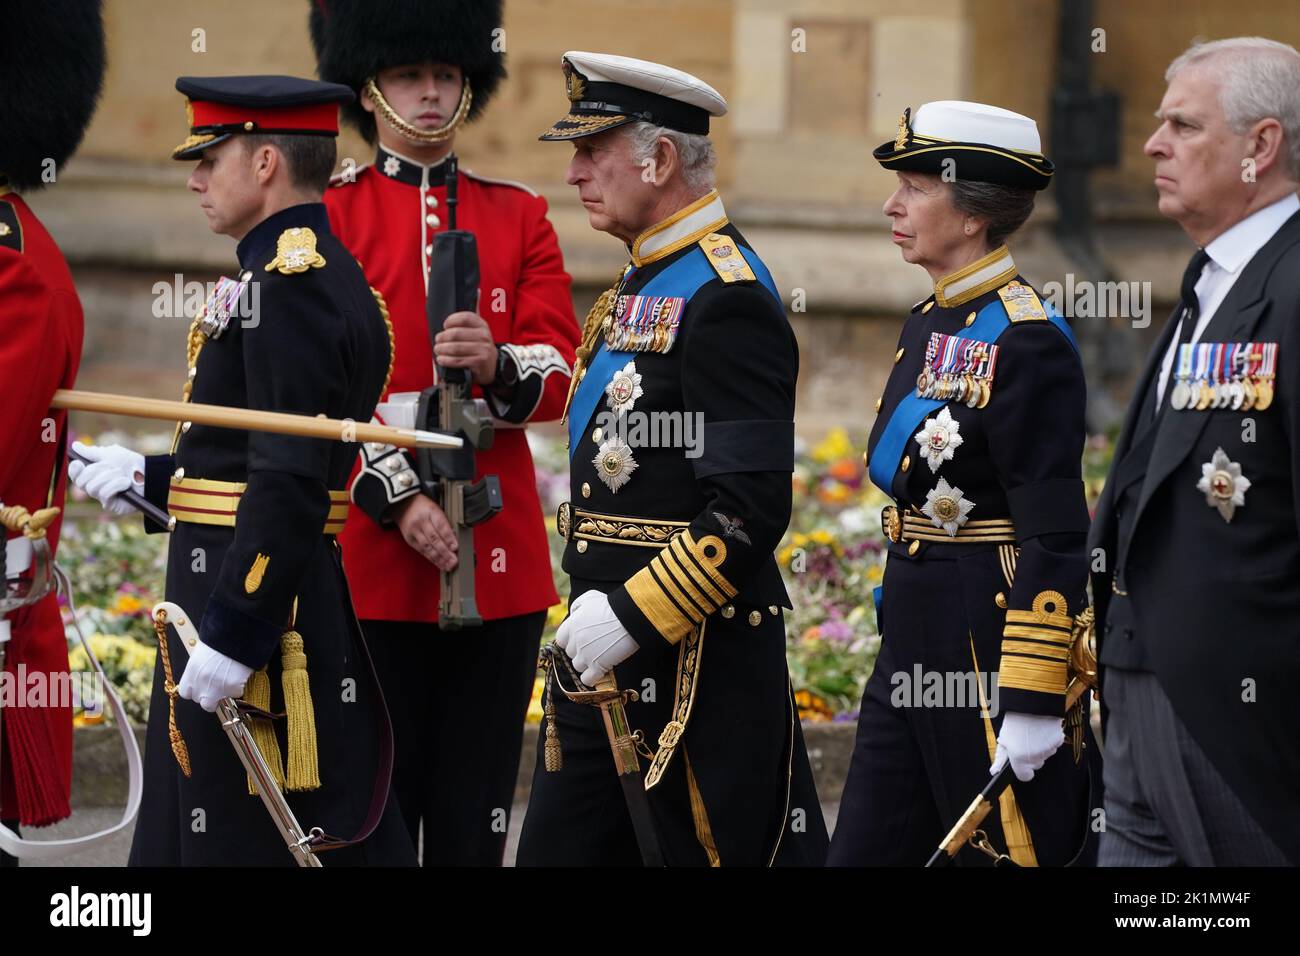 El rey Carlos III, la princesa Royal y el duque de York llegan para el servicio en comisión a la capilla de San Jorge, el castillo de Windsor para la reina Isabel II Fecha de la foto: Lunes 19 de septiembre de 2022. Foto de stock